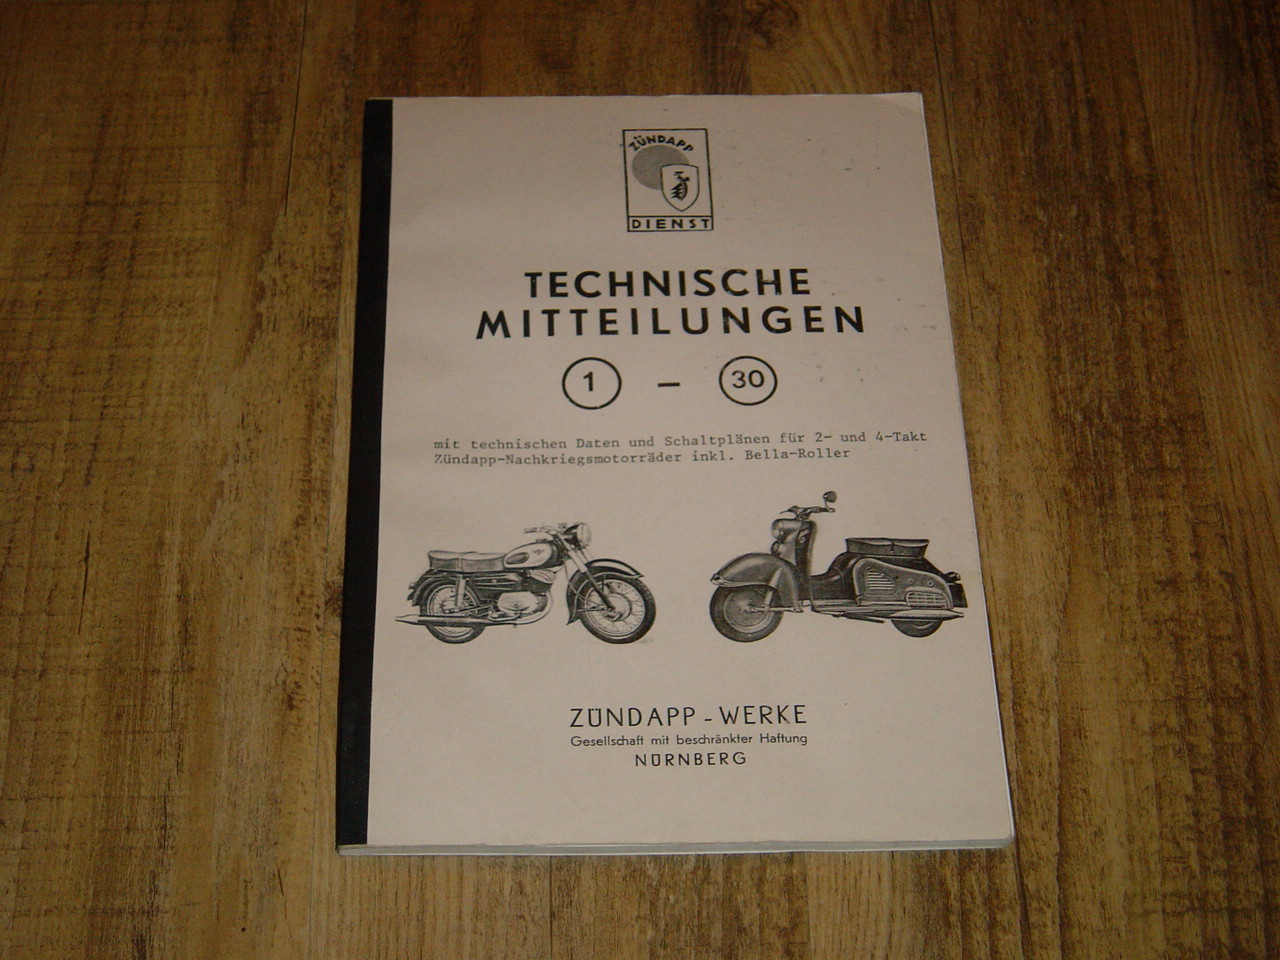 Technische mitteilungen 1- 30 Nürnberg Copy